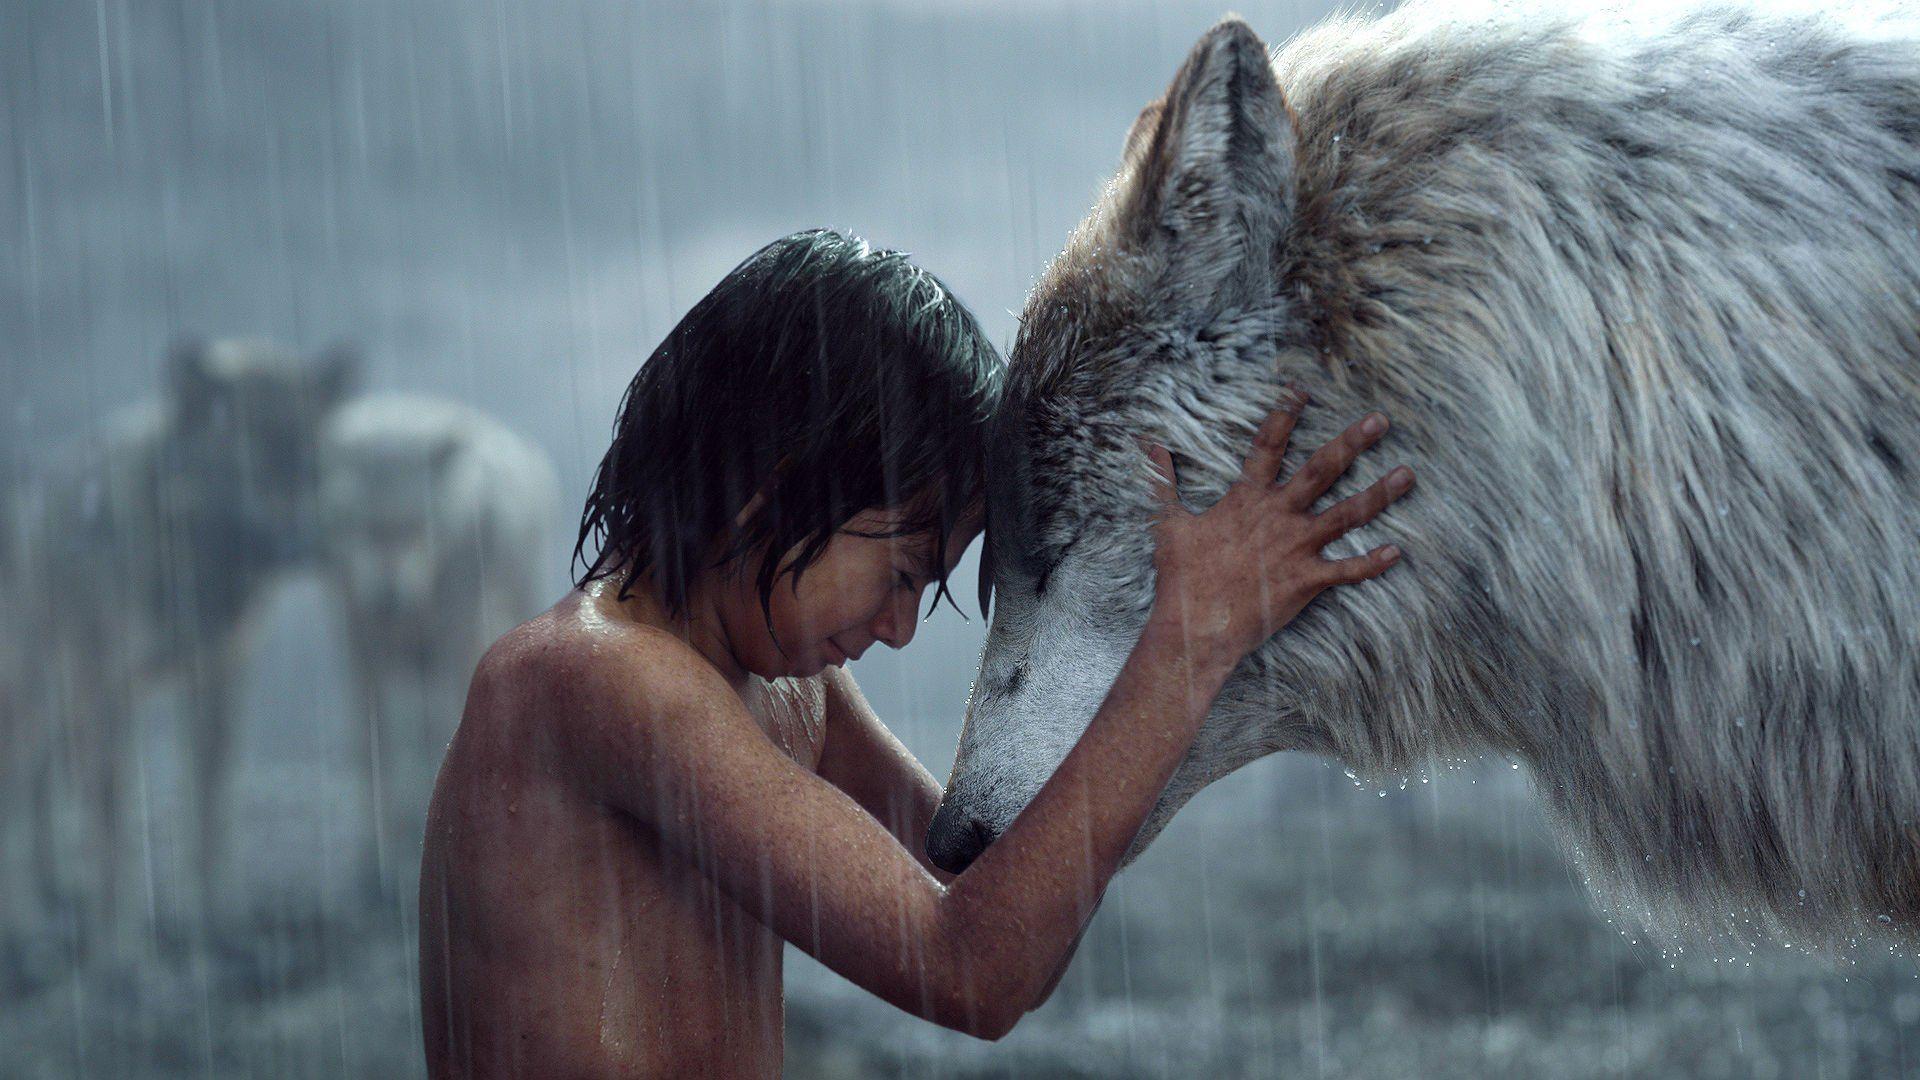 Mowgli And Wolf The Jungle Book Wallpaper